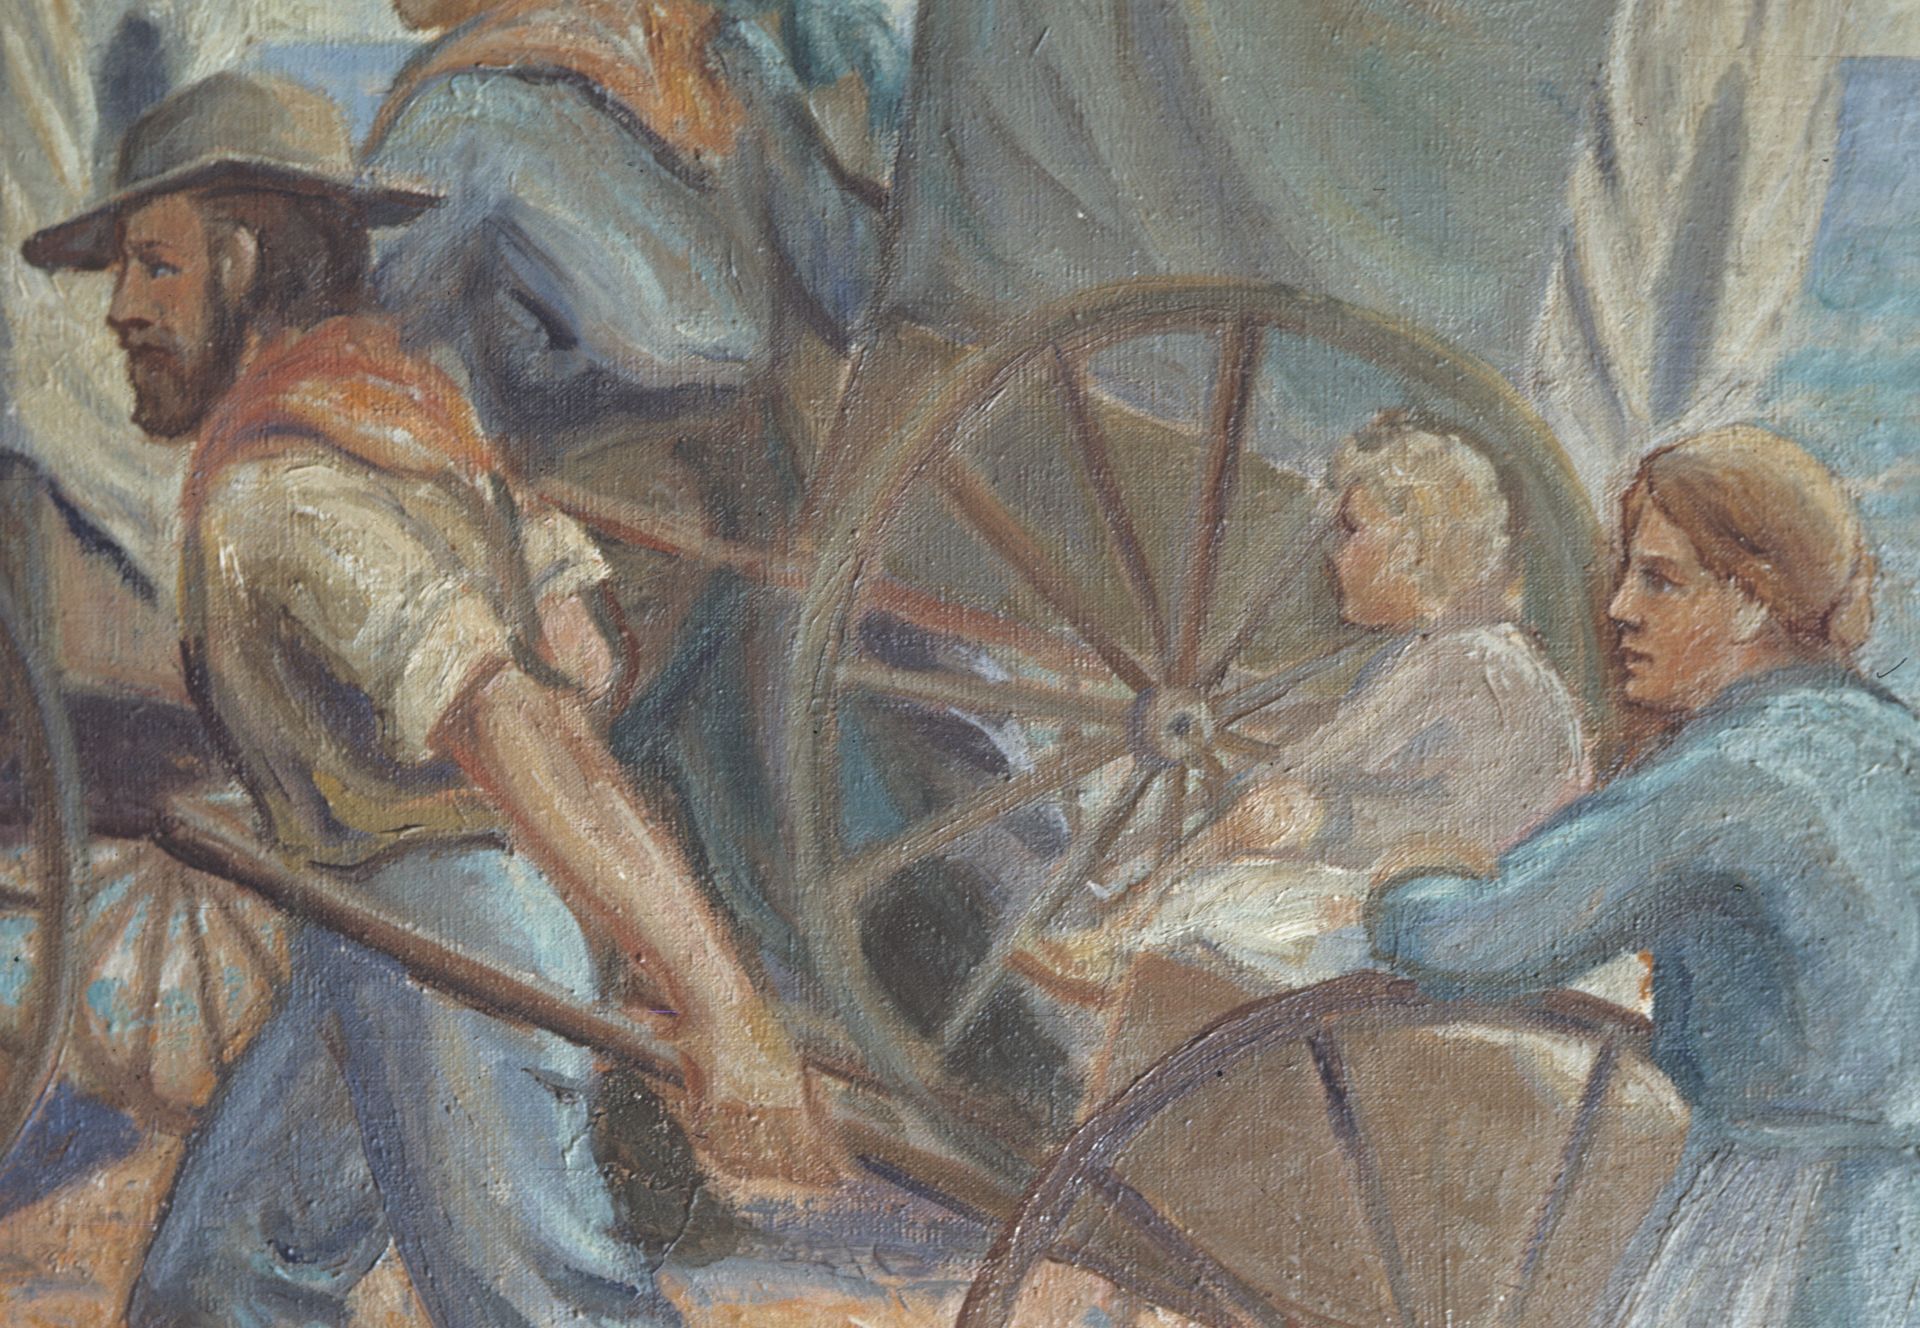 Handcart Pioneers, by John B. Fairbanks